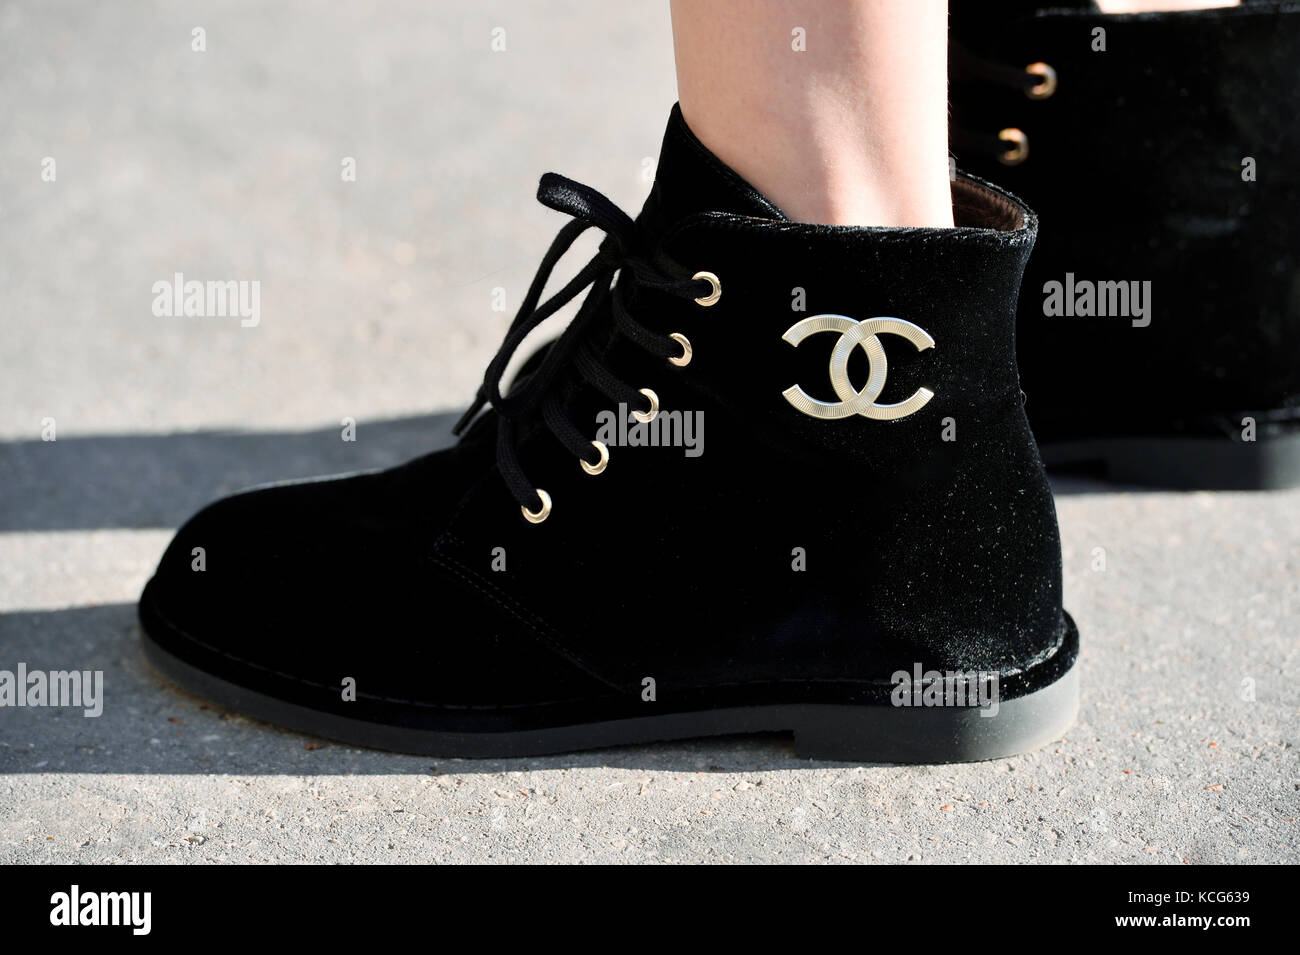 Chanel shoes immagini e fotografie stock ad alta risoluzione - Alamy